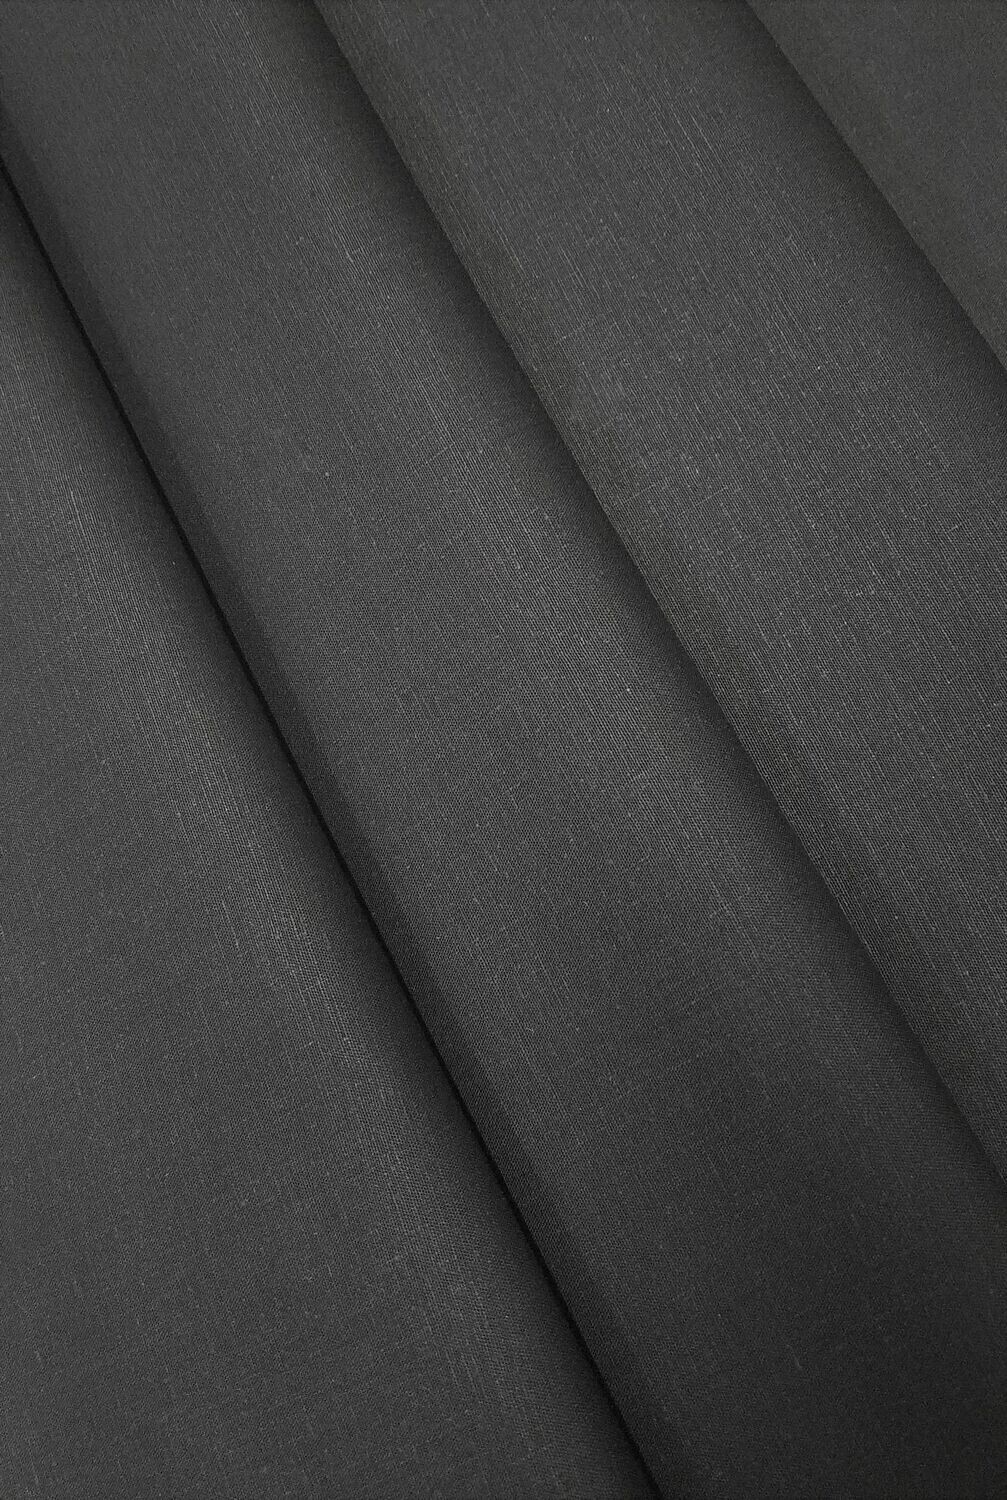 (CLOSE OUT) Black Stretch Hemp Plain Weave
55% Certified Organic Hemp
41% Certified Organic Cotton
4% Lycra , 6.5oz, 43"/44" width